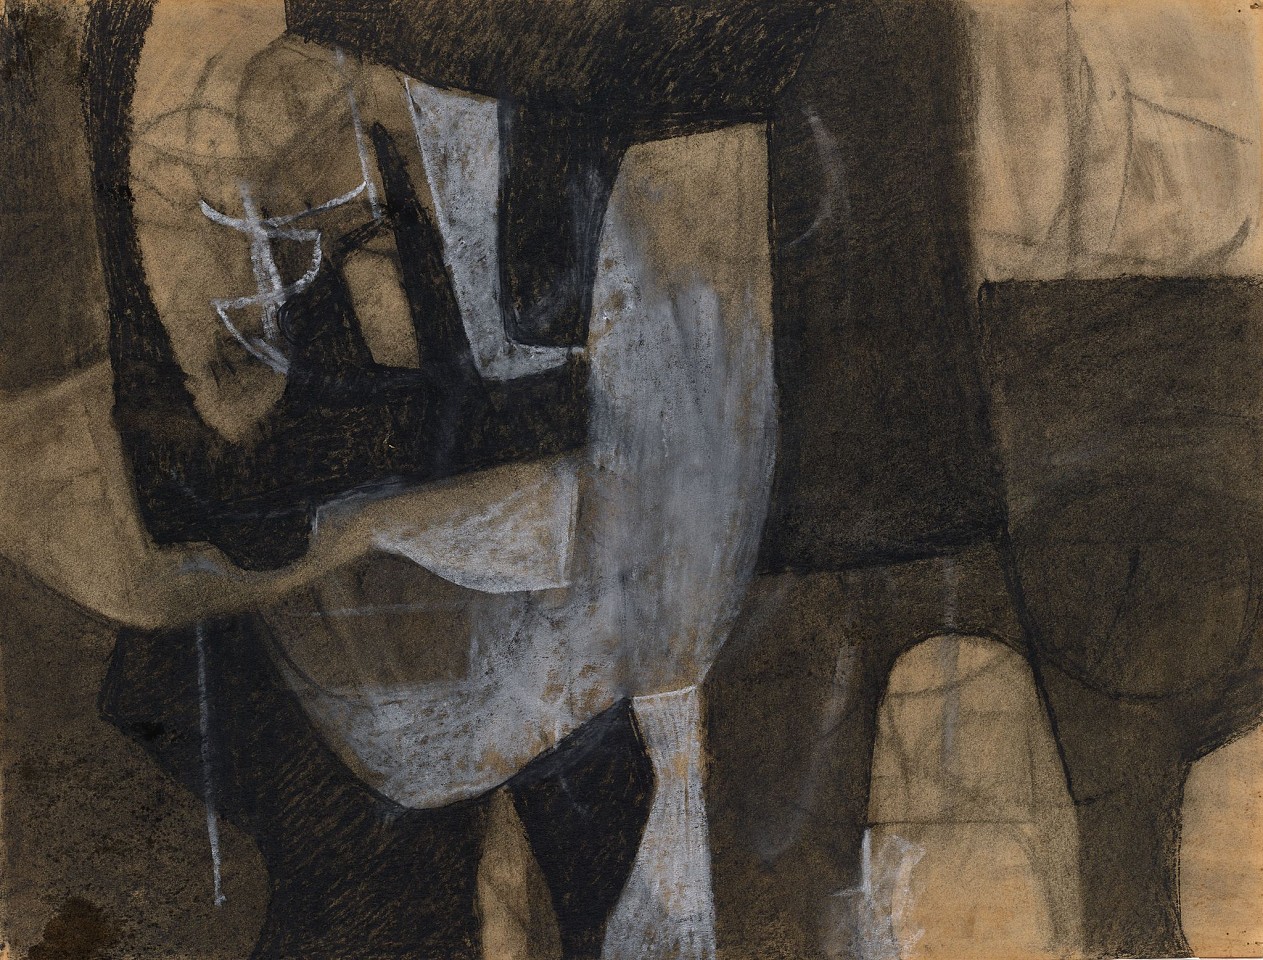 Charlotte Park, Untitled, c. 1952
Charcoal on paper, 18 x 24 in. (45.7 x 61 cm)
PAR-00469